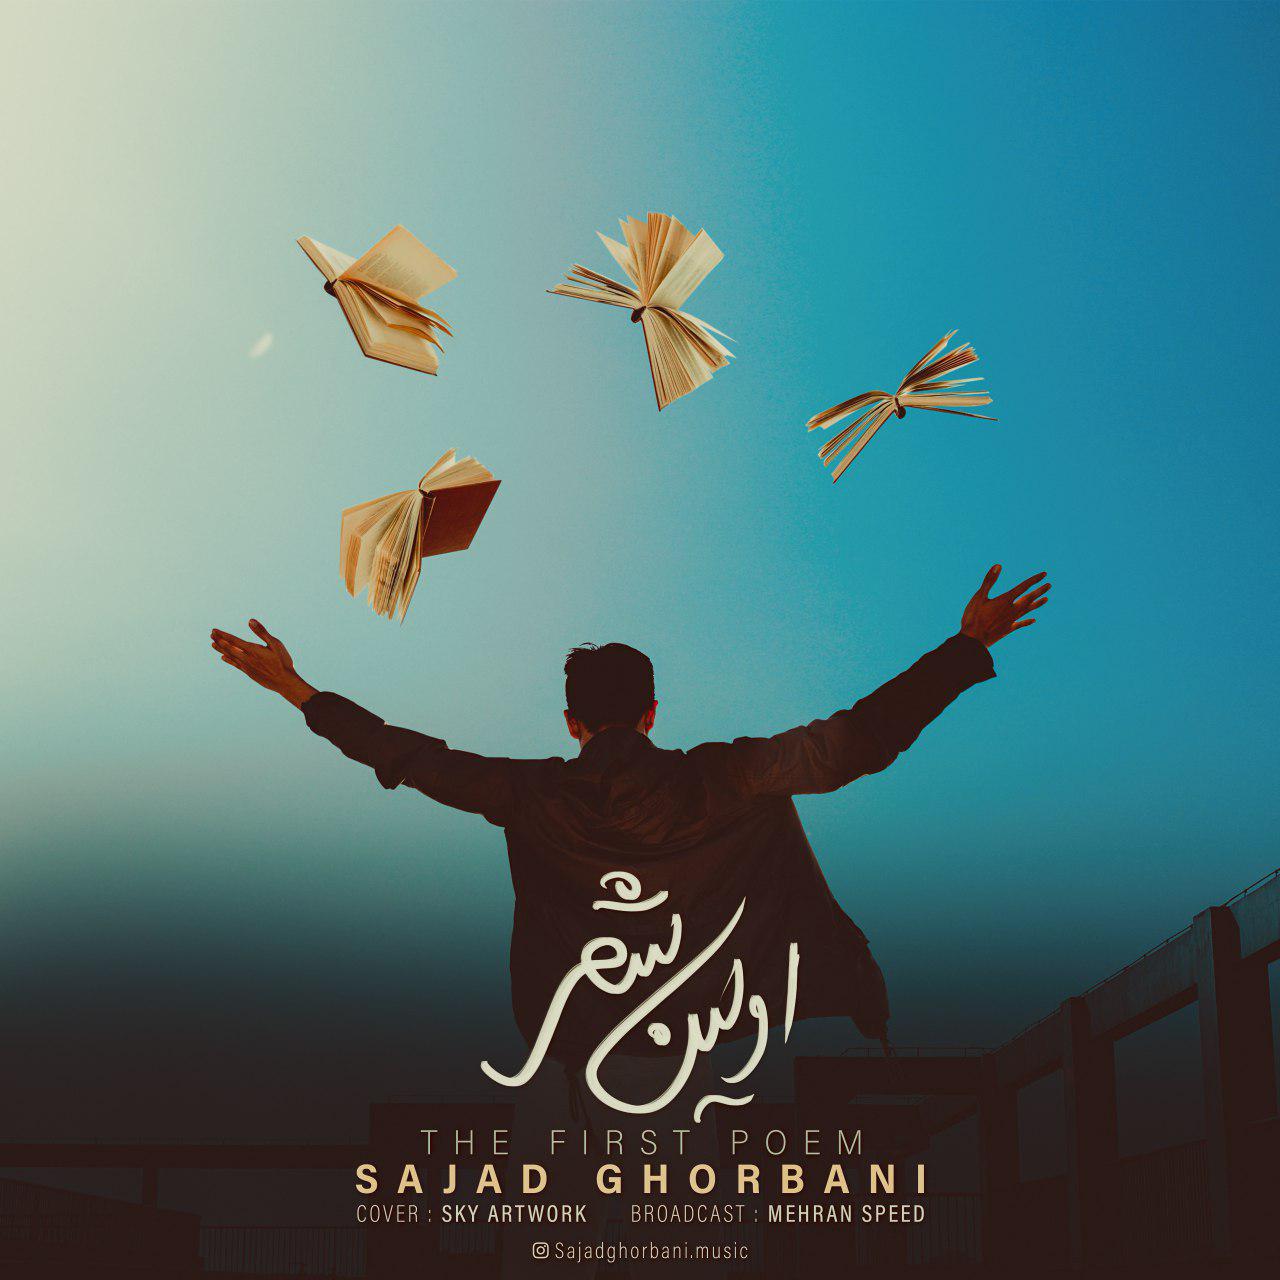  دانلود آهنگ جدید سجاد قربانی - اولین شعر | Download New Music By Sajad Ghorbani - The First Poem